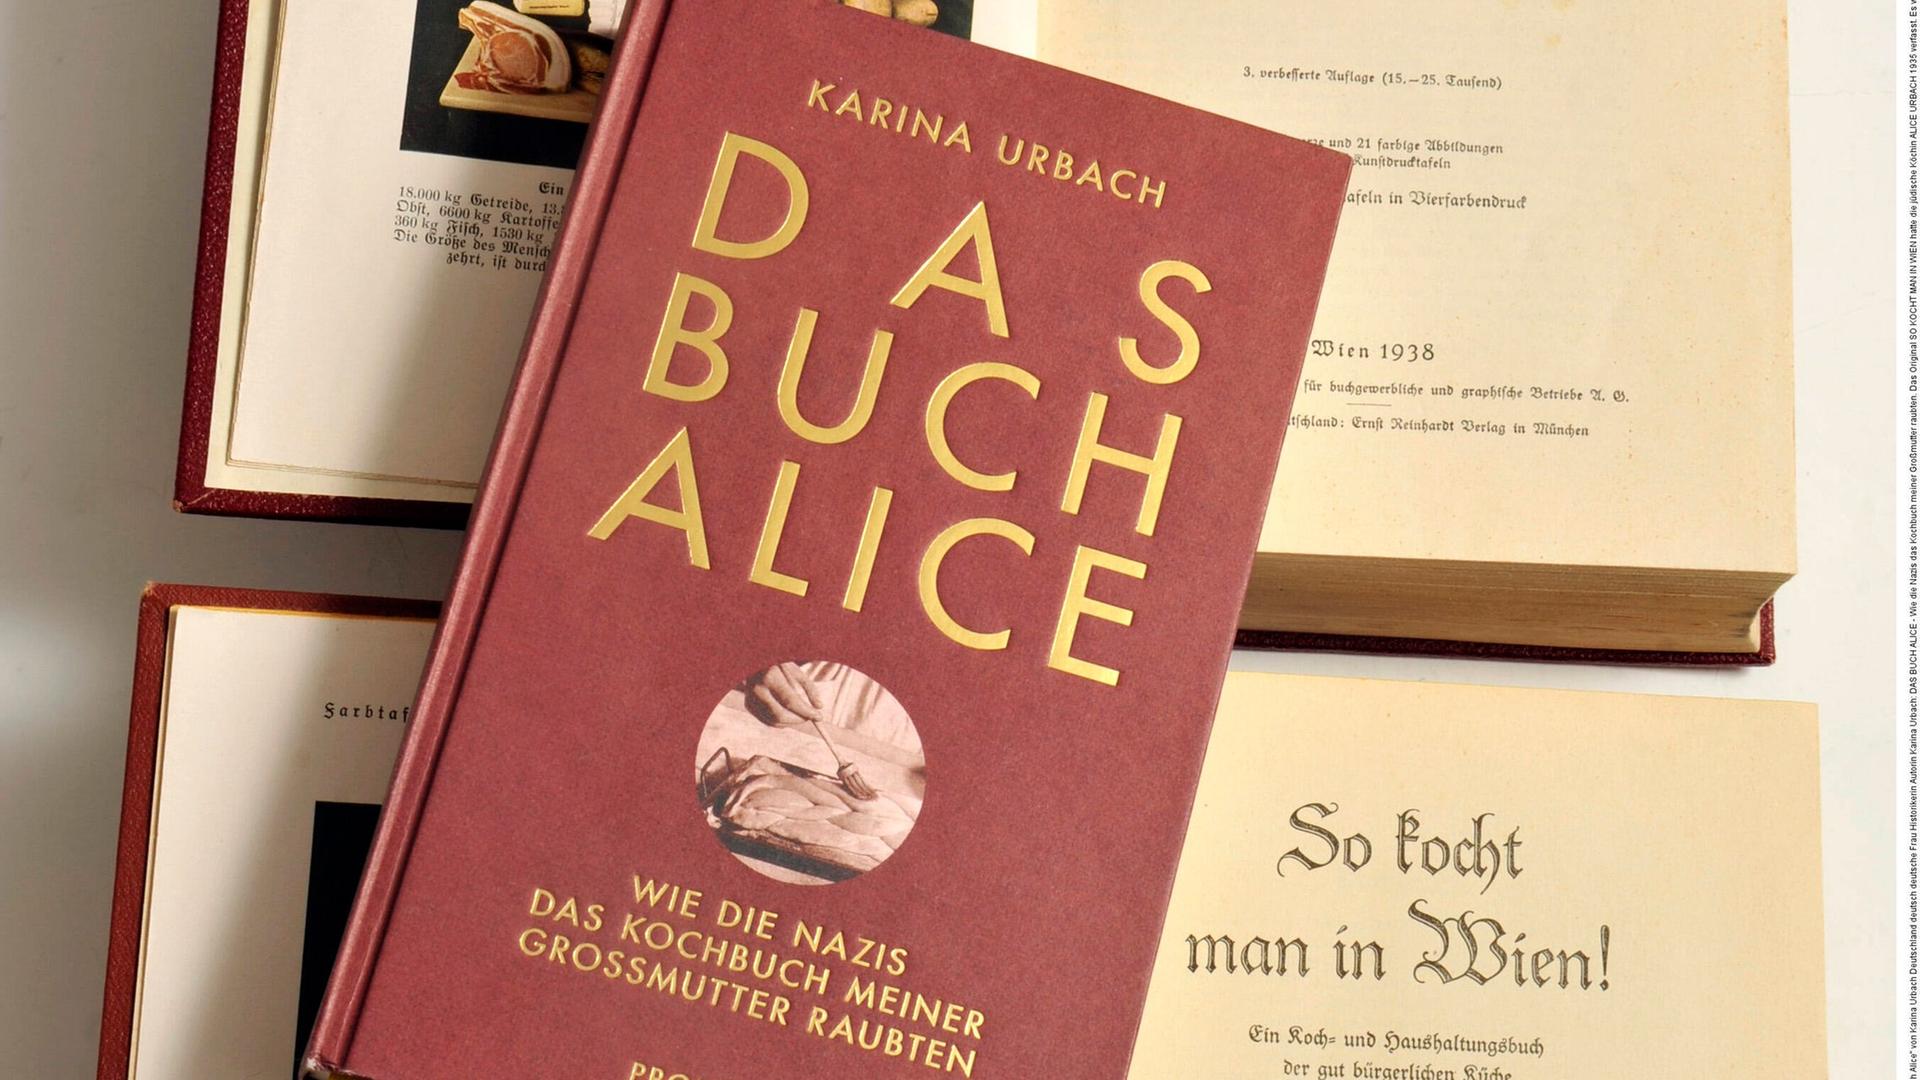 Karina Urbachs Buch "Das Buch Alice" über das Leben und Wirken ihrer Großmutter liegt aufgeschlagen auf dem annektierten Kochbuch von Alice Urbach.